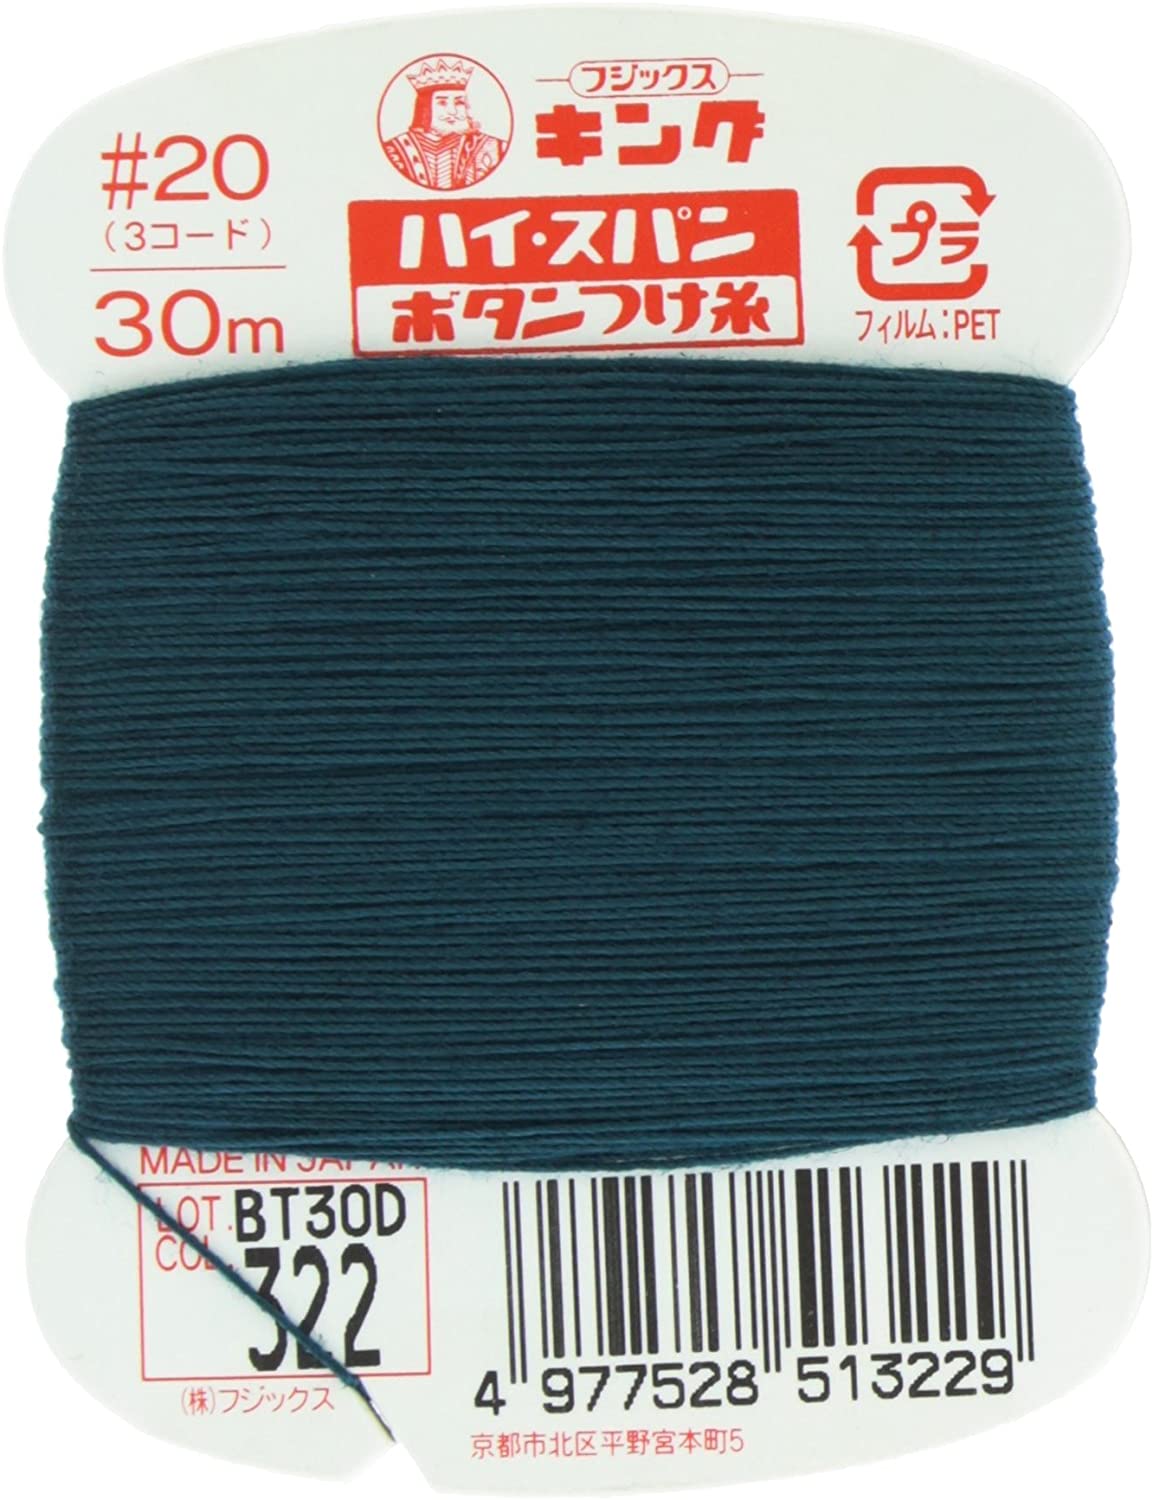 FK51-322 ハイスパンボタンつけ糸 #20 30m巻 (枚)